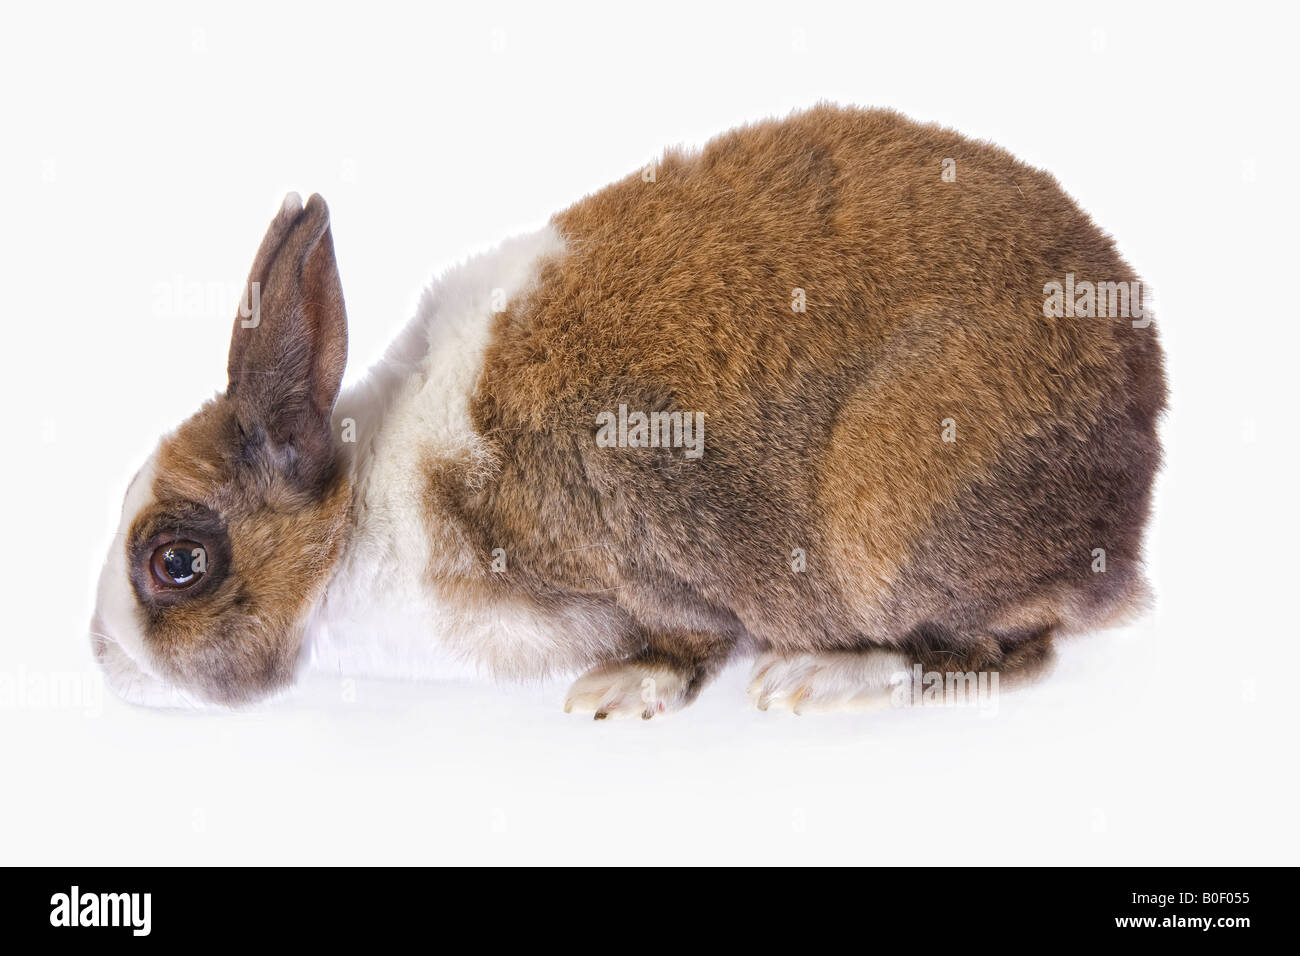 Dutch rabbit isolated on white background Stock Photo